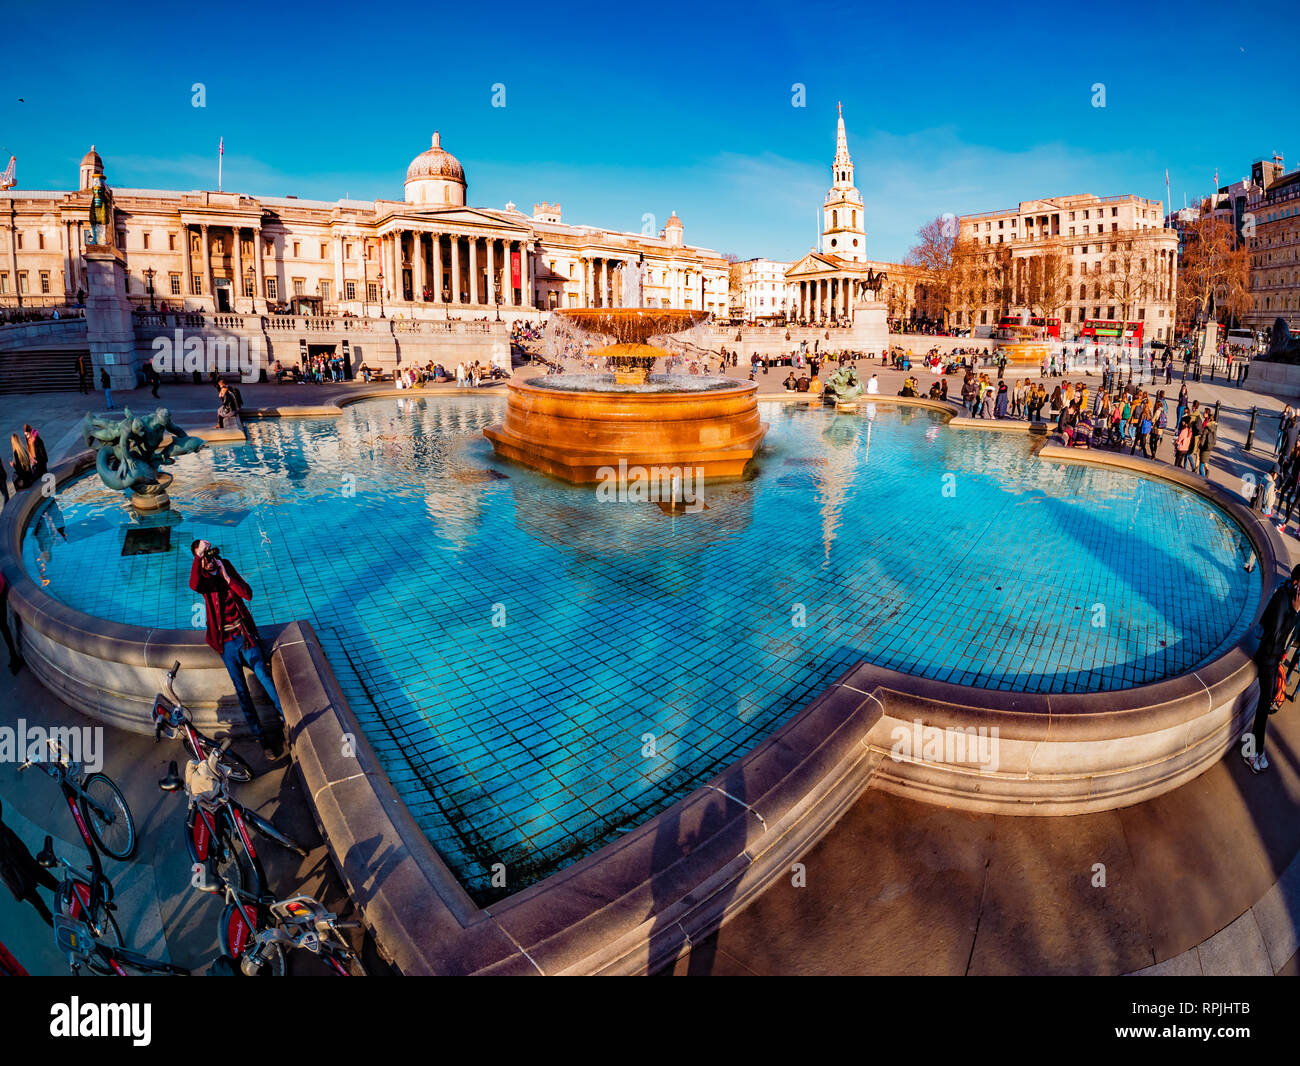 London, England - 14. Februar 2019: weite Aussicht von artesischen Brunnen und Leute, Trafalgar Square in London an einem sonnigen Tag Stockfoto